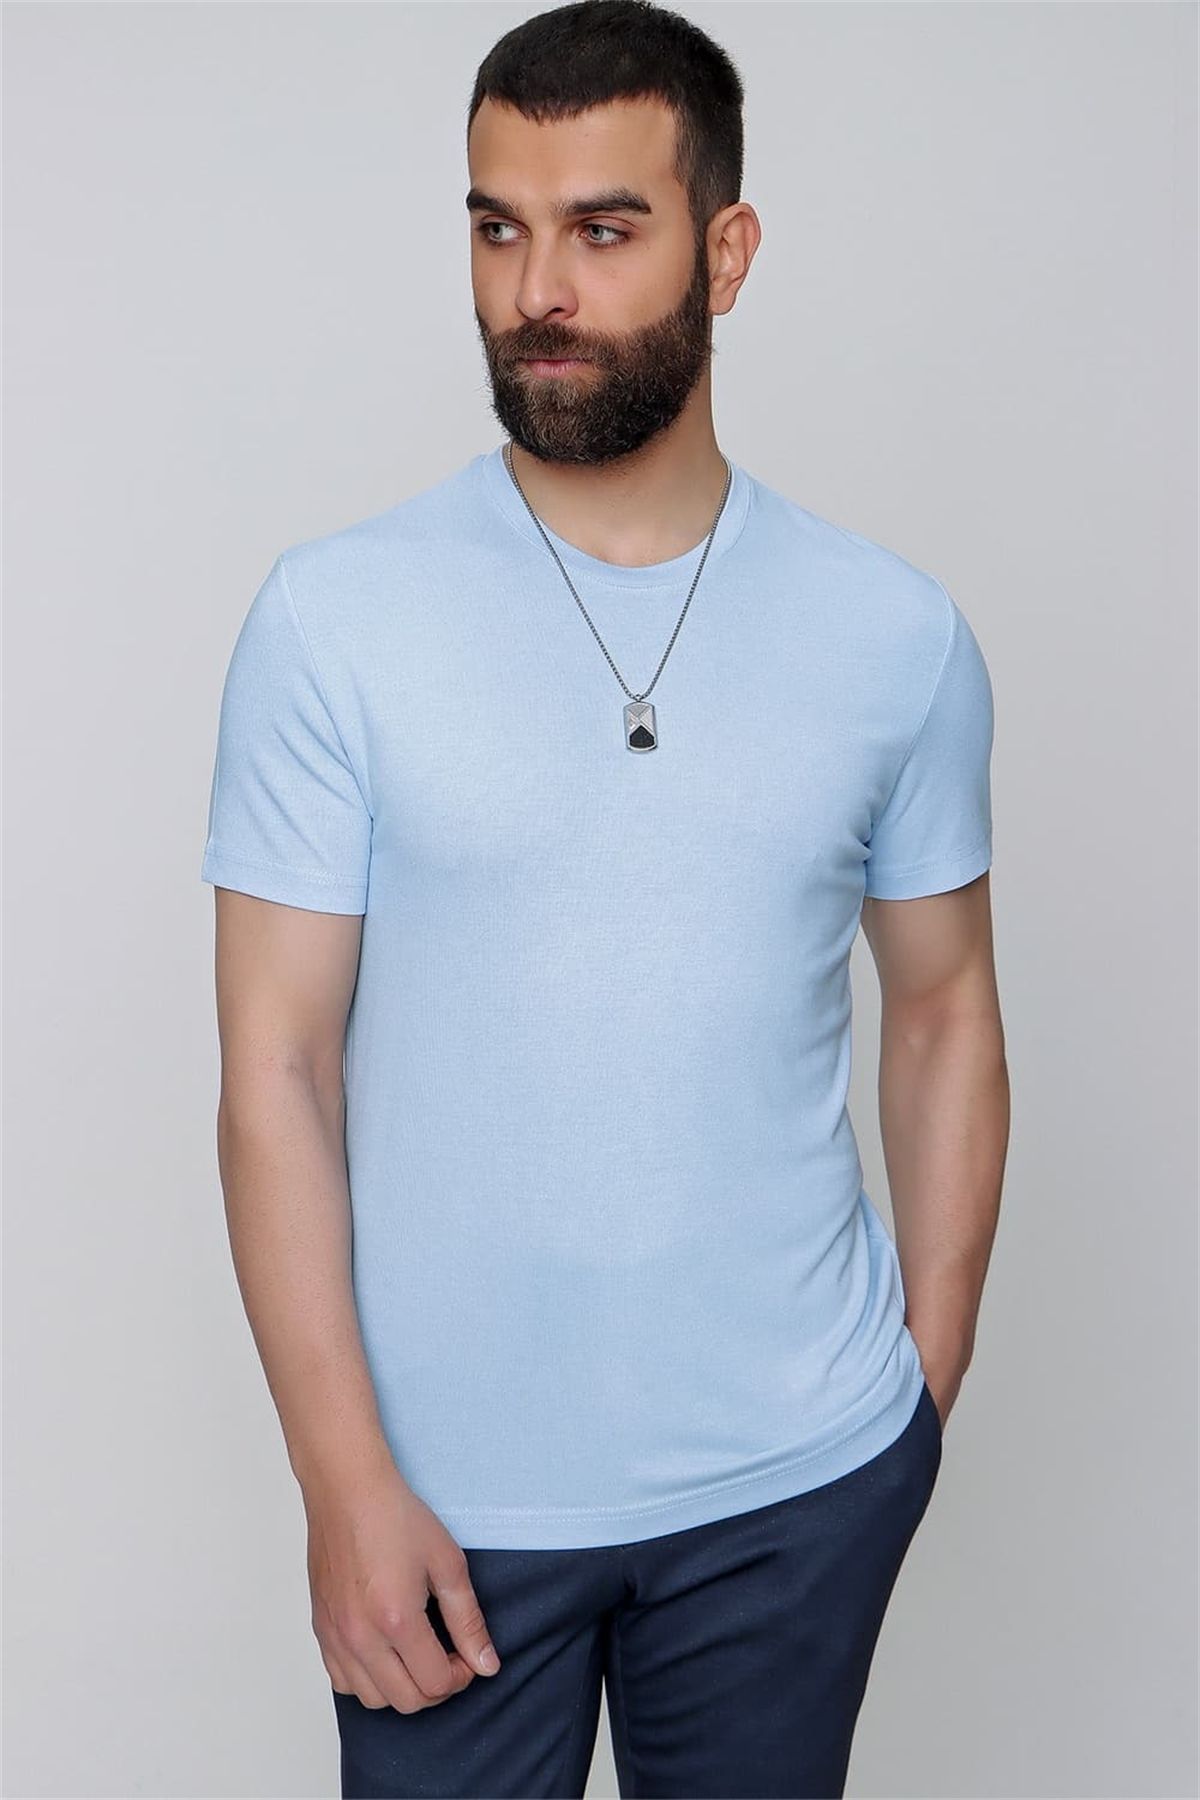 Efor Ts 823 Slim Fit Mavi Spor T-shirt